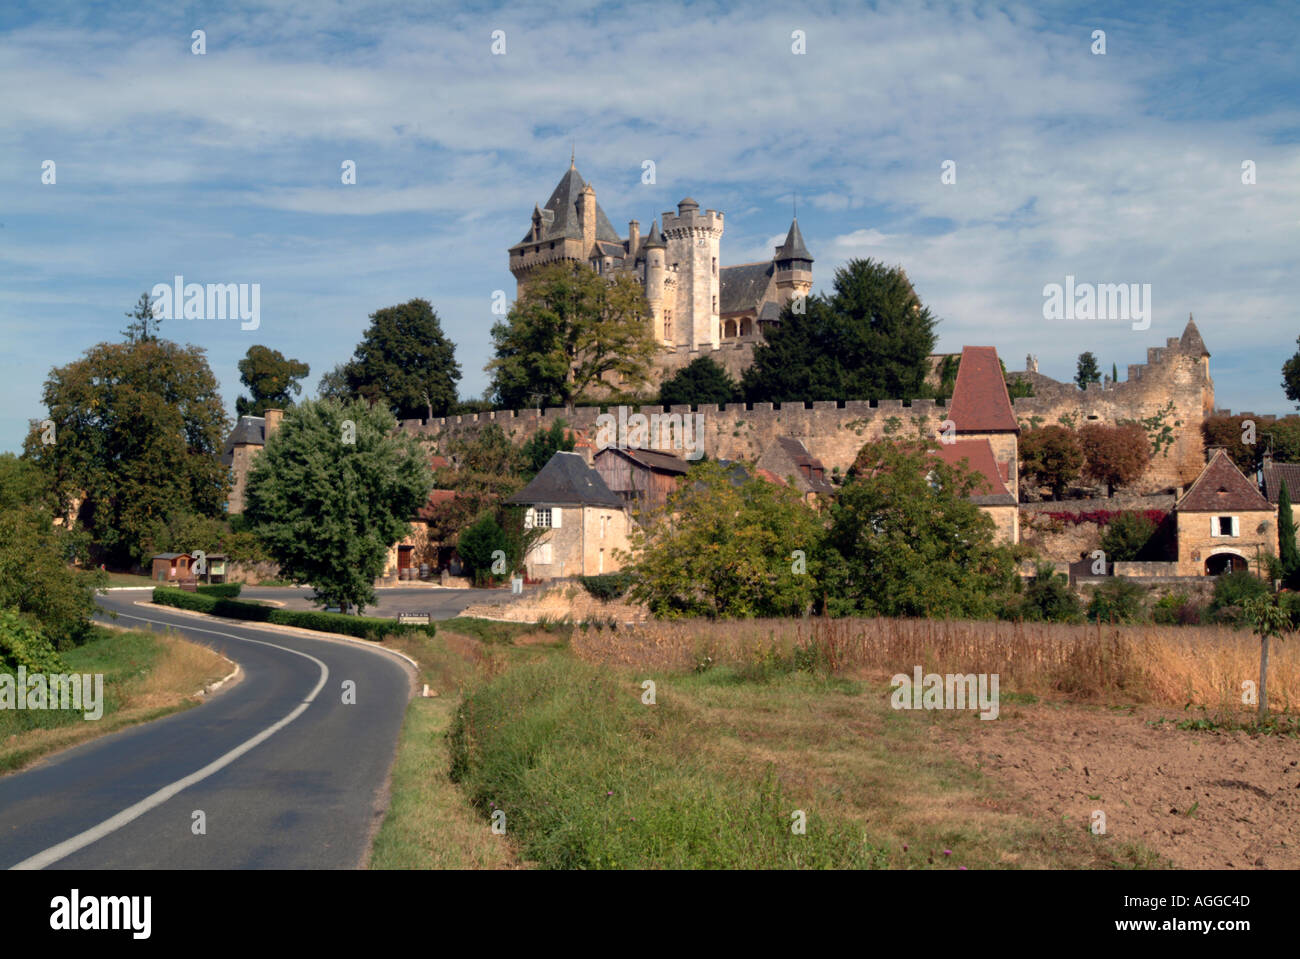 Chateau de Montfort France Stock Photo